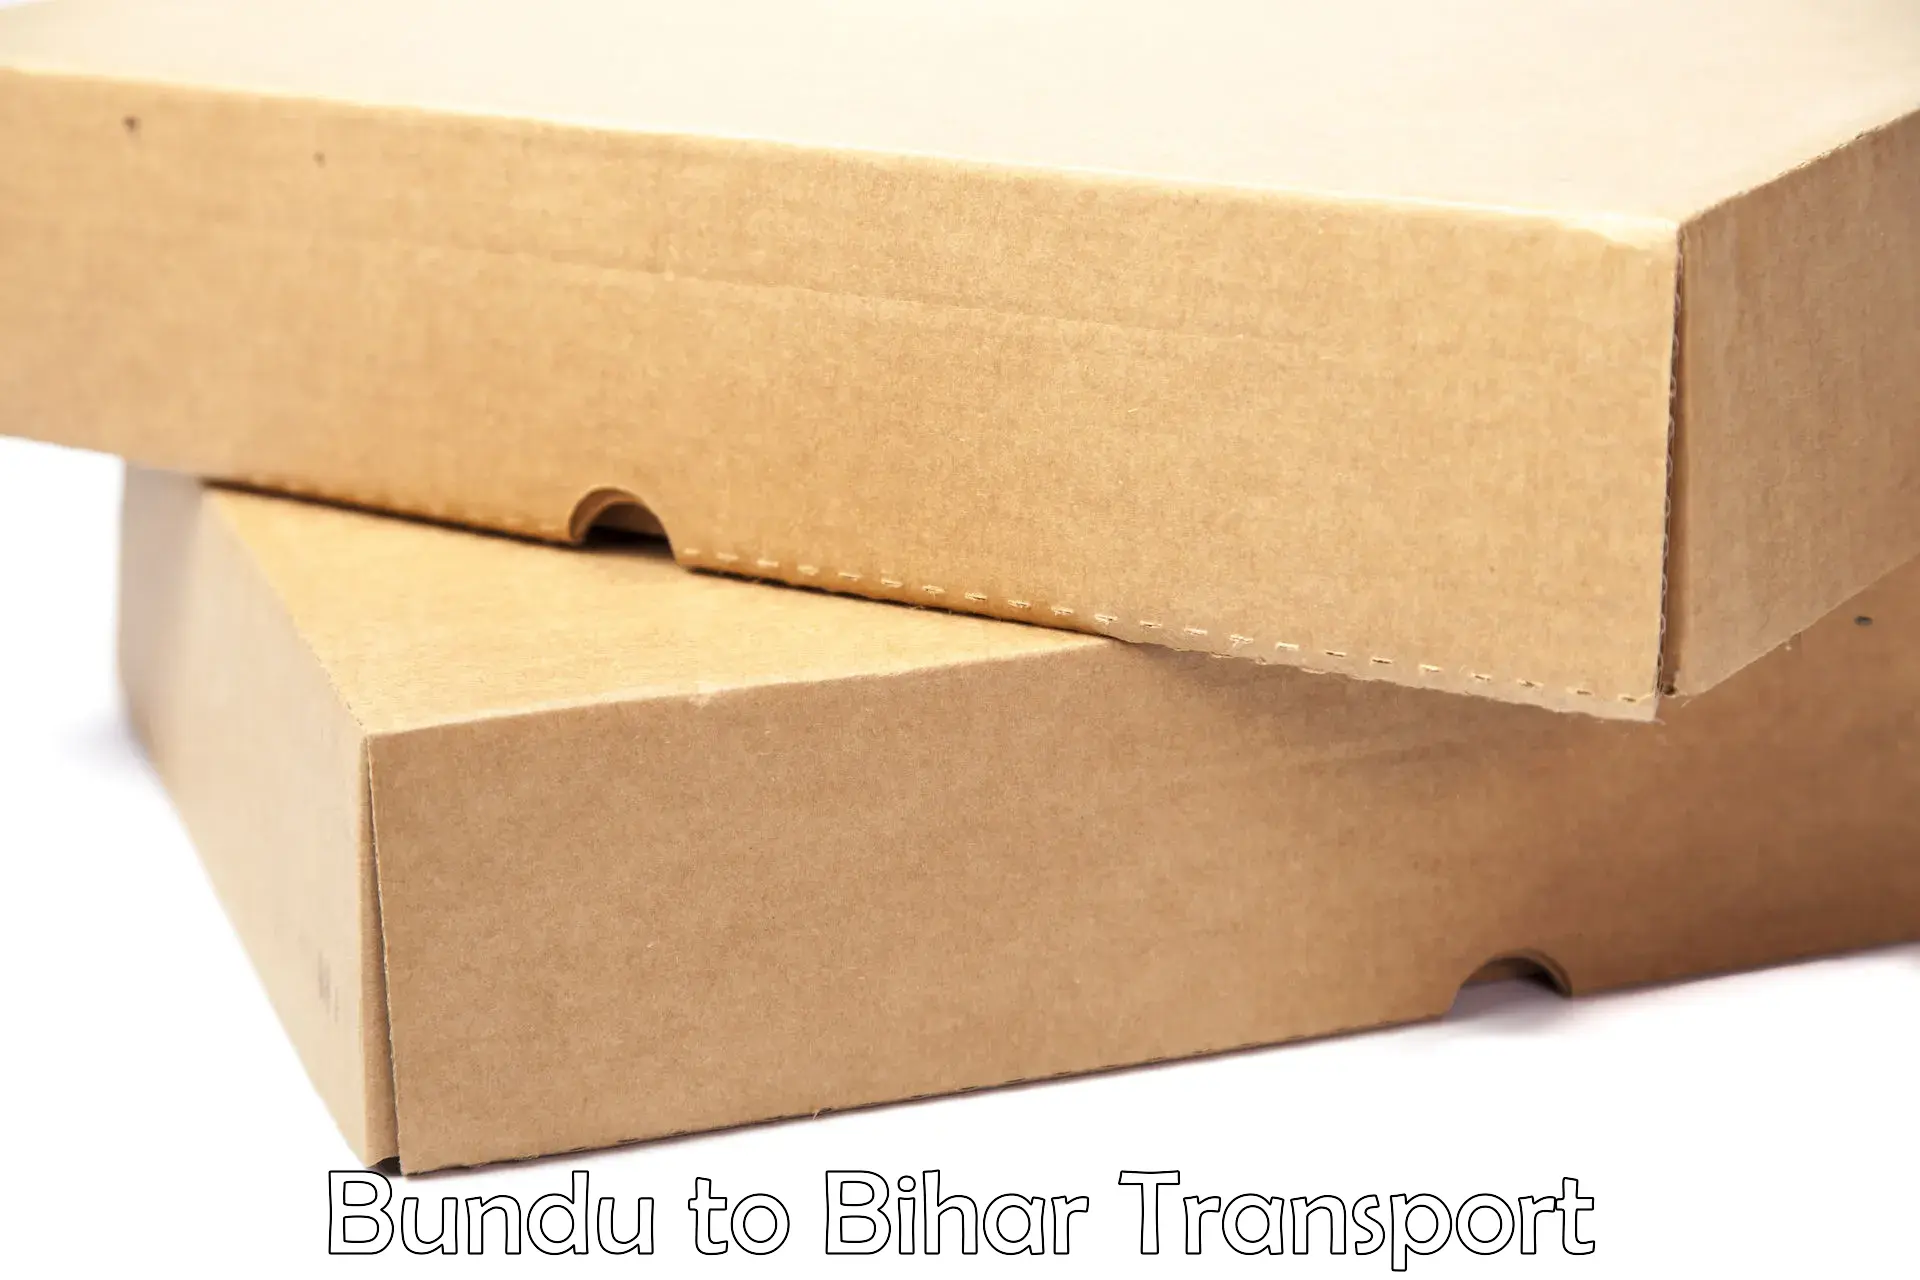 Vehicle transport services Bundu to Dighwara